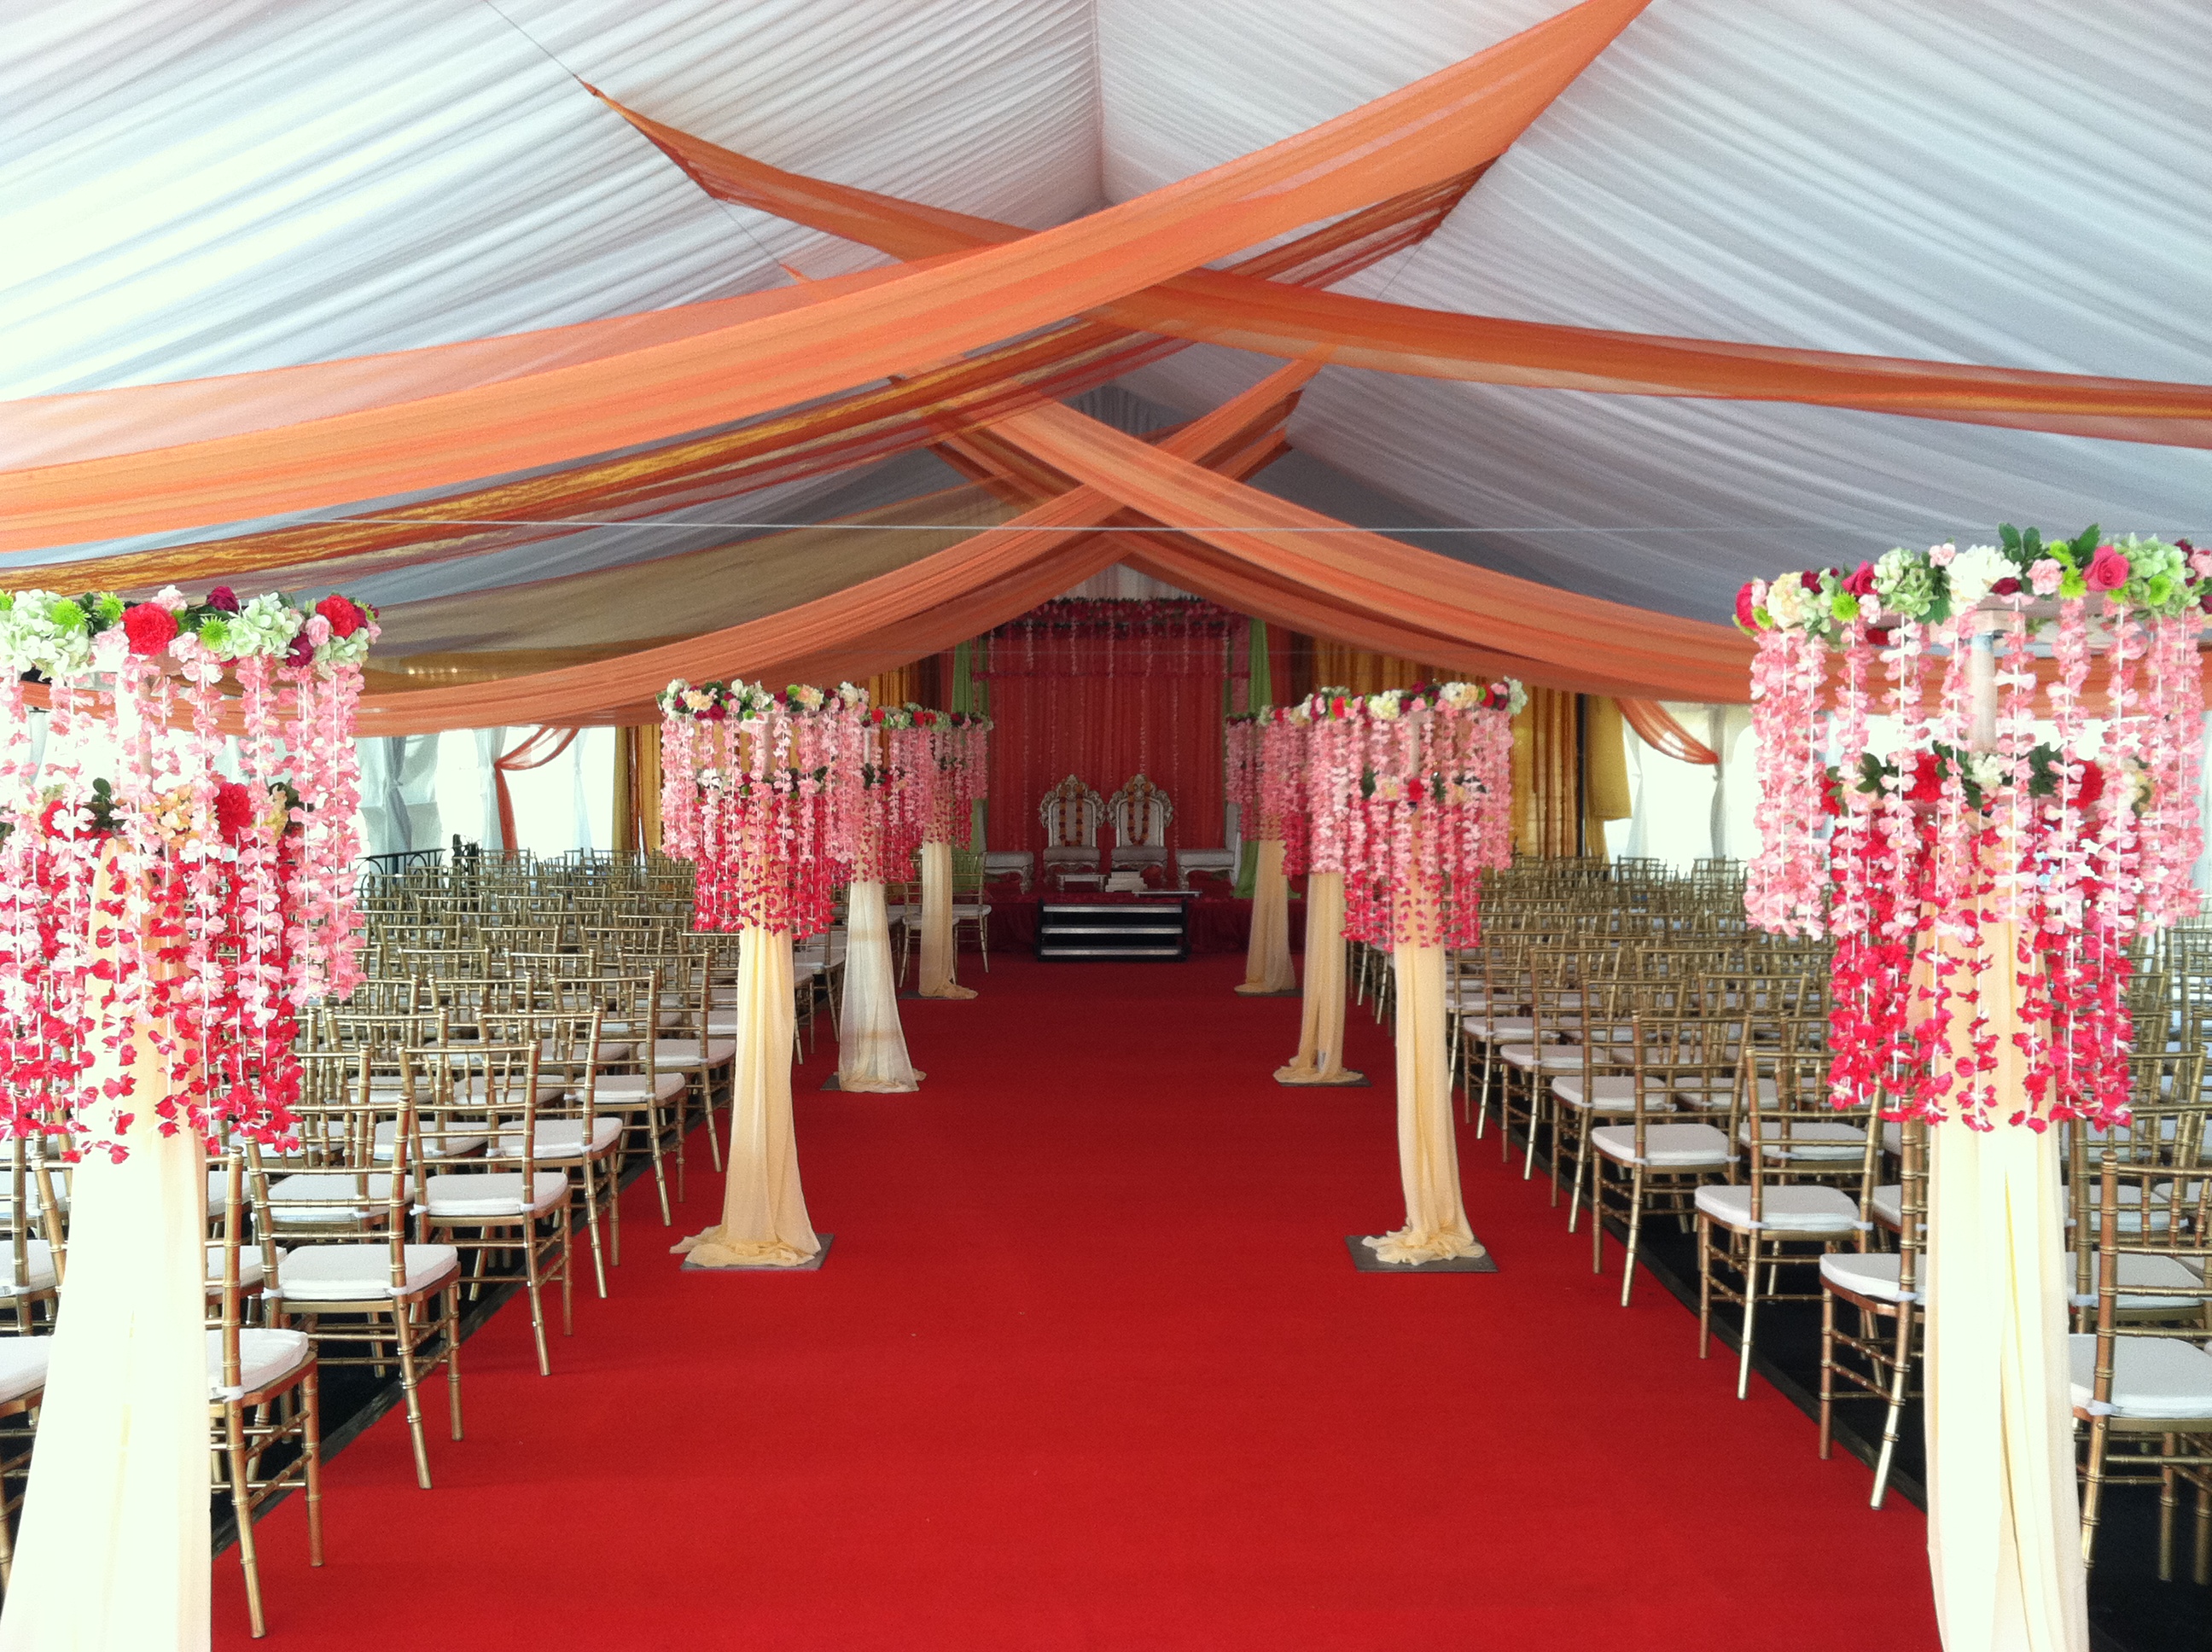 Party Tent Rentals Wedding Tent Rentals Md Va Dc A Grand Event